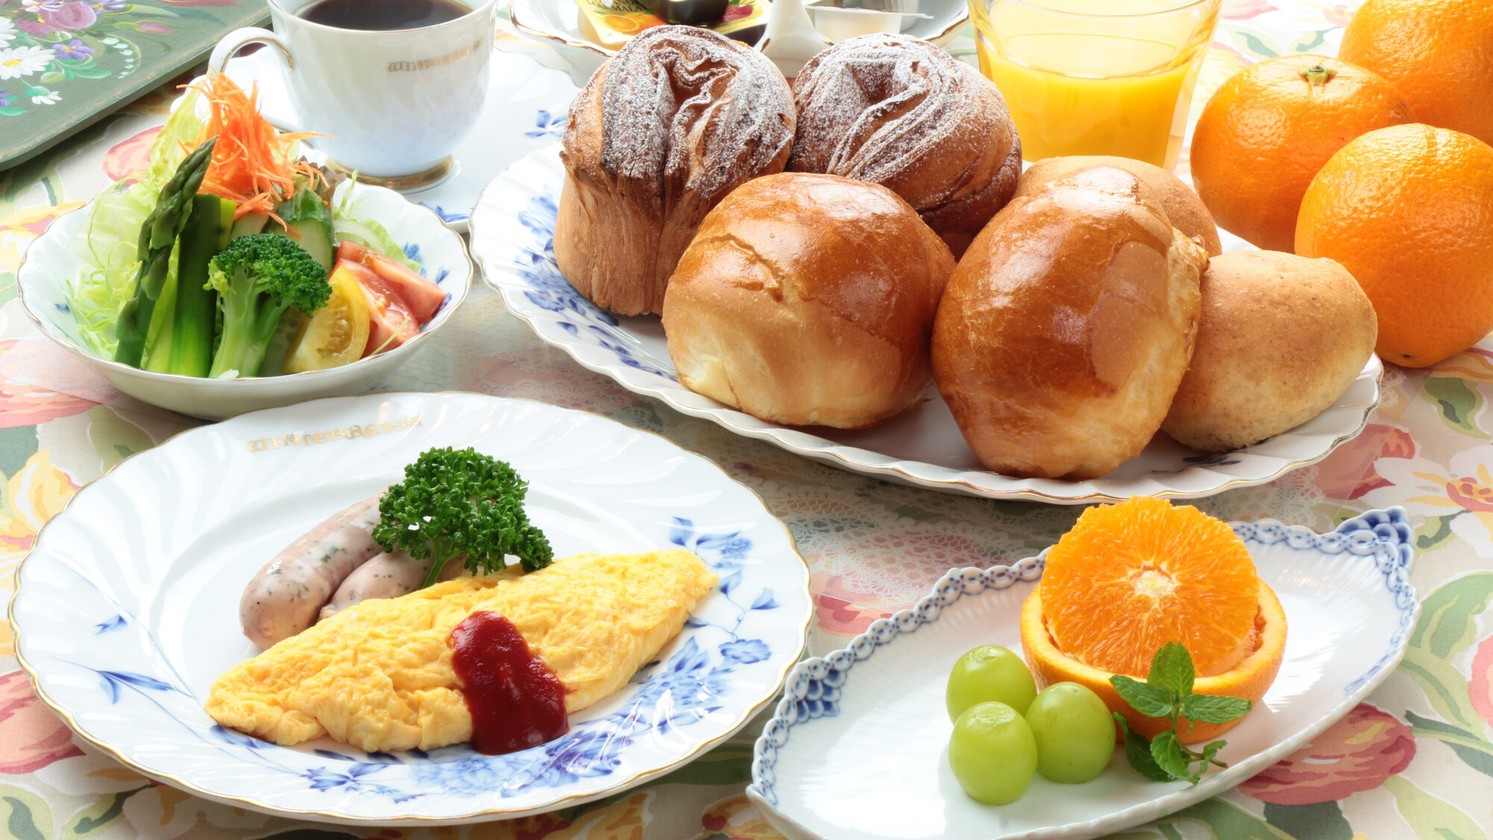 【食事】朝食。焼きたてふわふわの手作りパンとバランスのよい洋朝食。